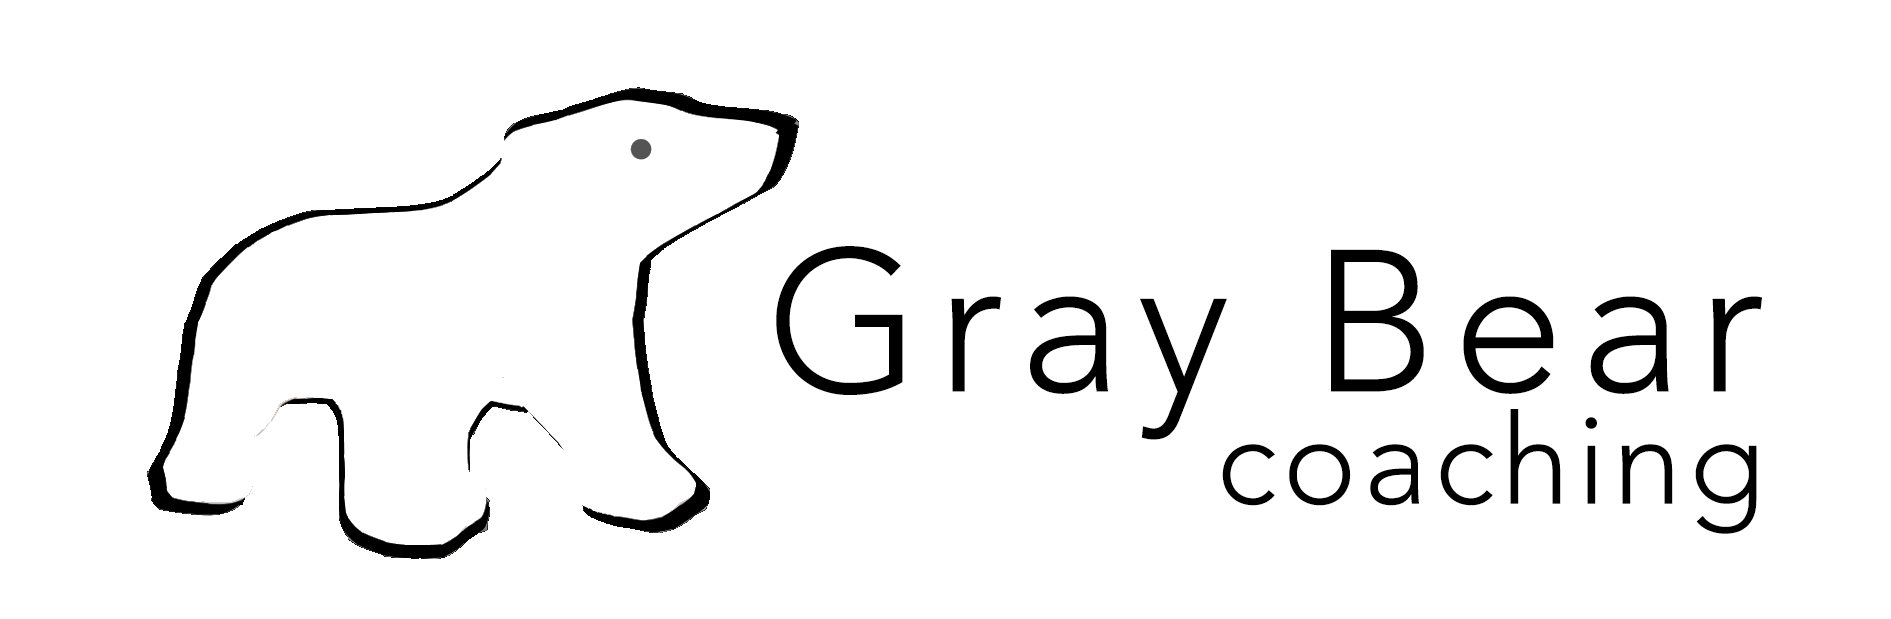 Gray Bear Coaching Logo